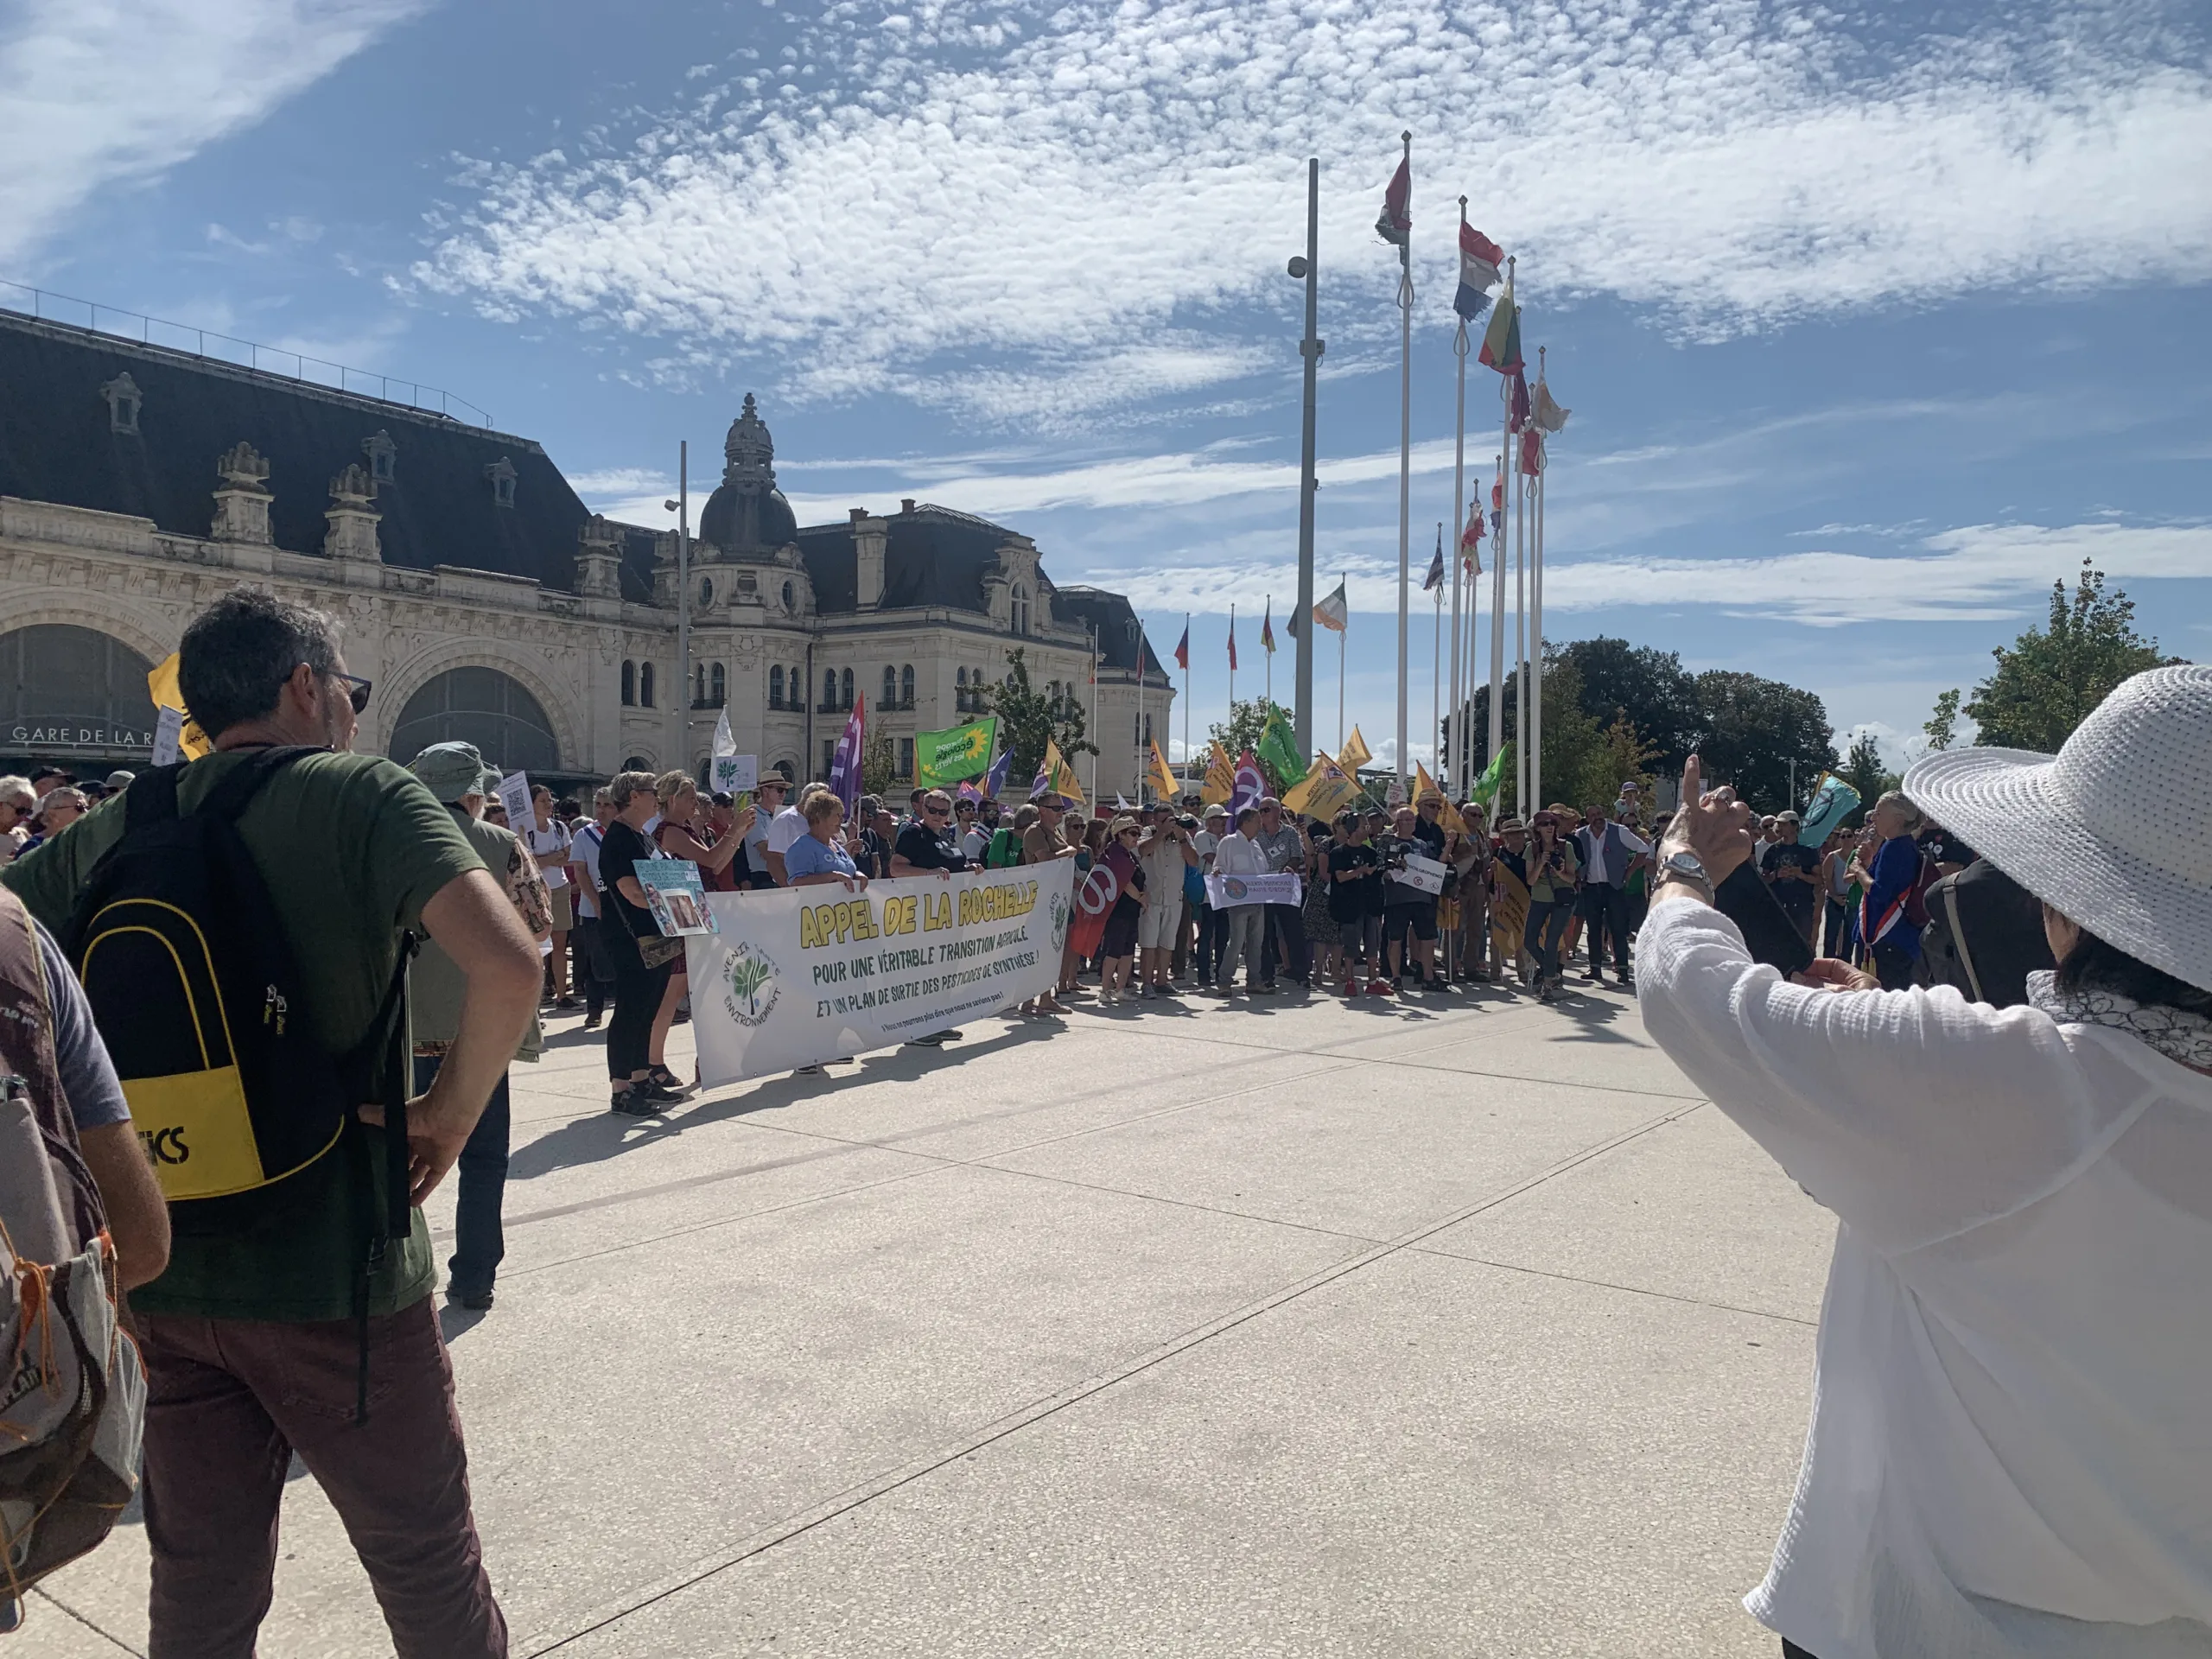 La manifestation a débuté à 14H sur le parvis de la gare de La Rochelle | INF